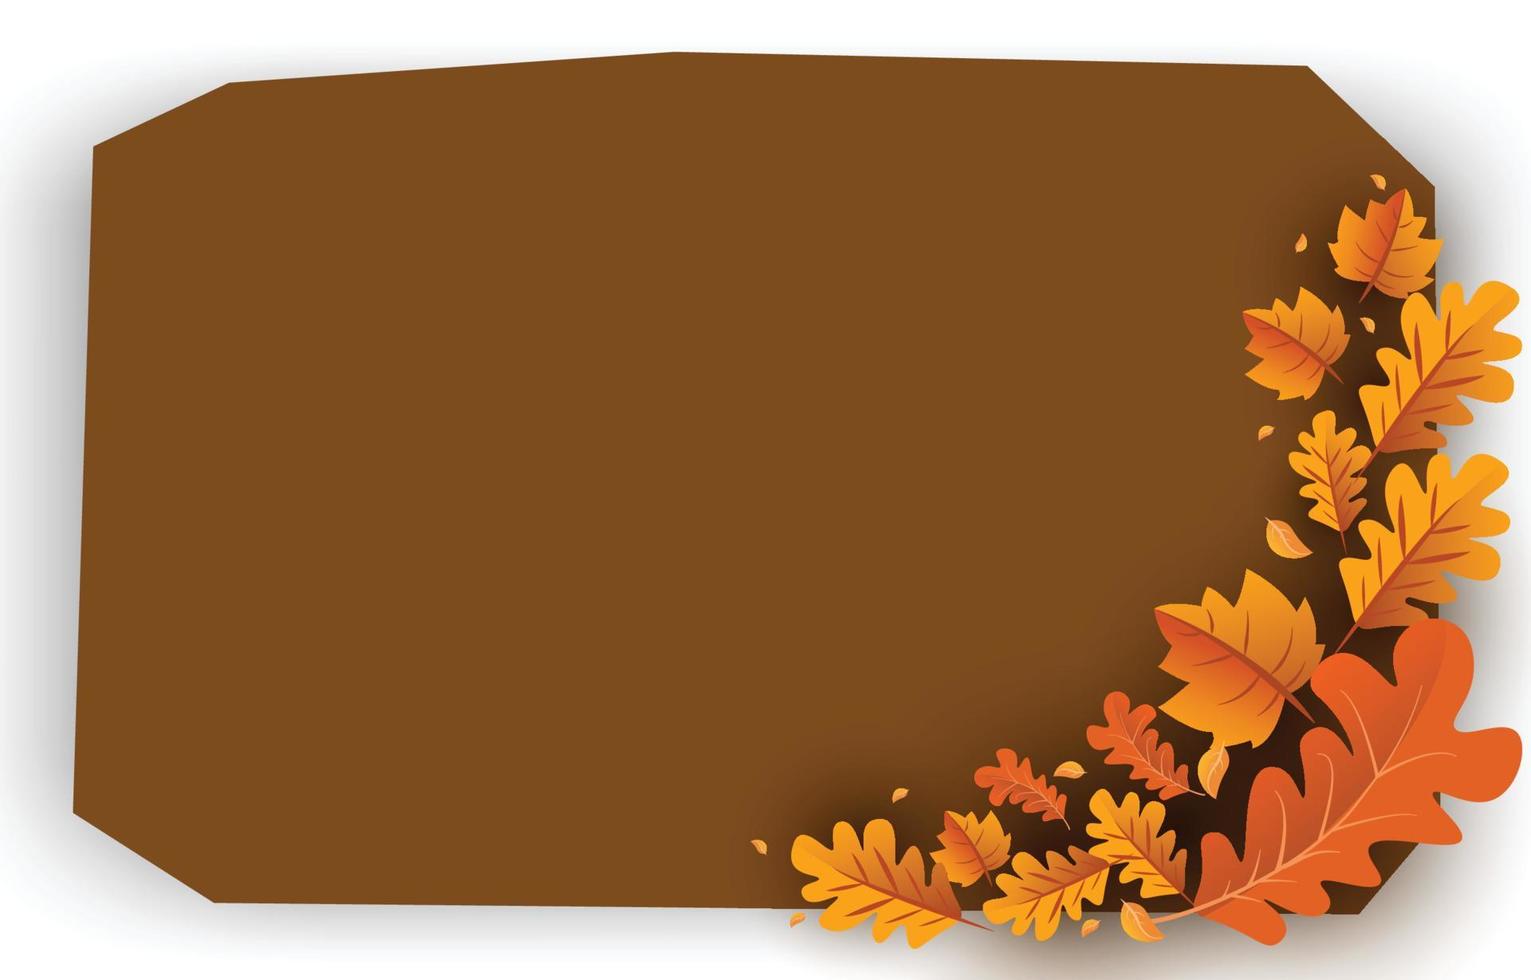 fondo de otoño con hojas de color amarillo dorado con marcos cuadrados y espacio libre, concepto de otoño, para papel tapiz, postales, tarjetas de felicitación, páginas web, banners, ventas en línea. ilustración vectorial vector